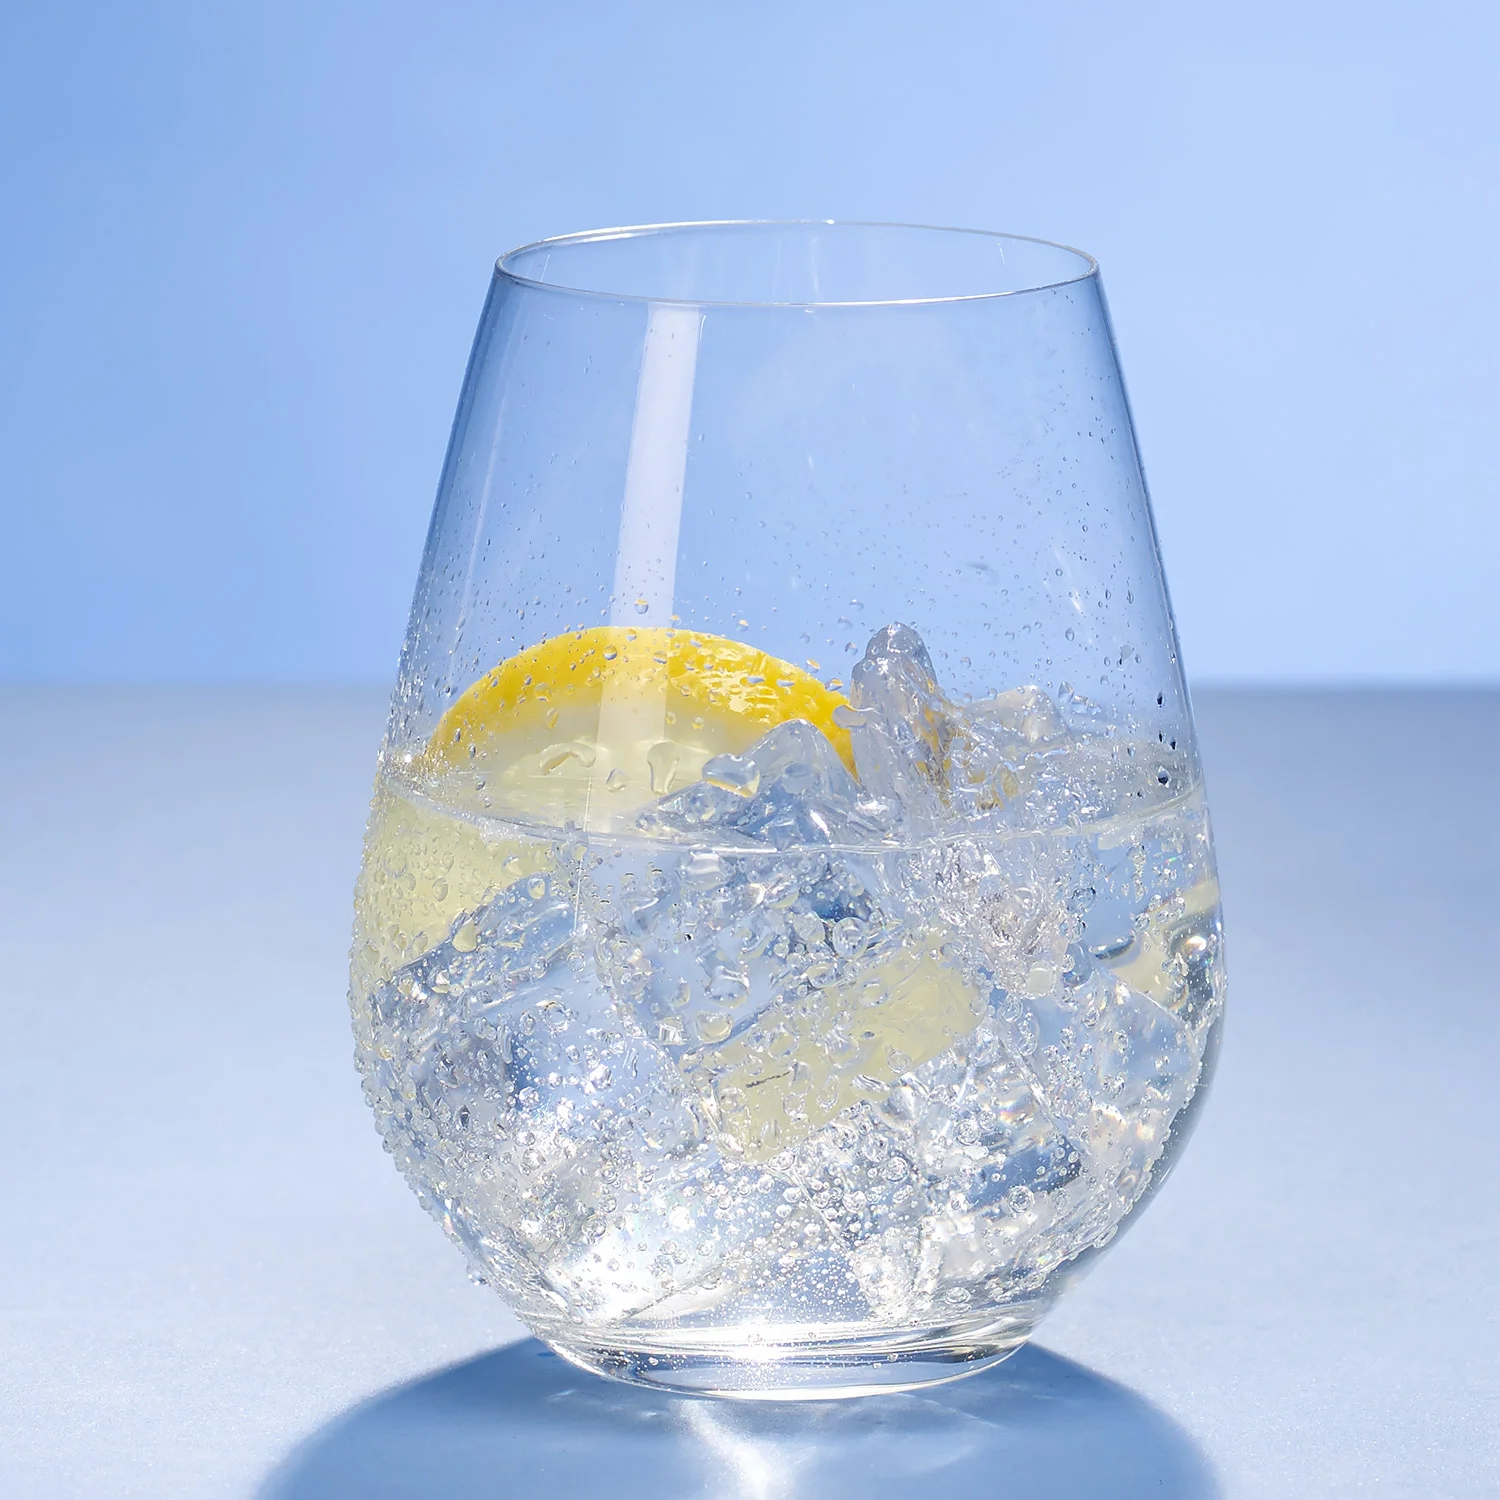 Ovid Набор стаканов для воды 420 мл, 4 шт